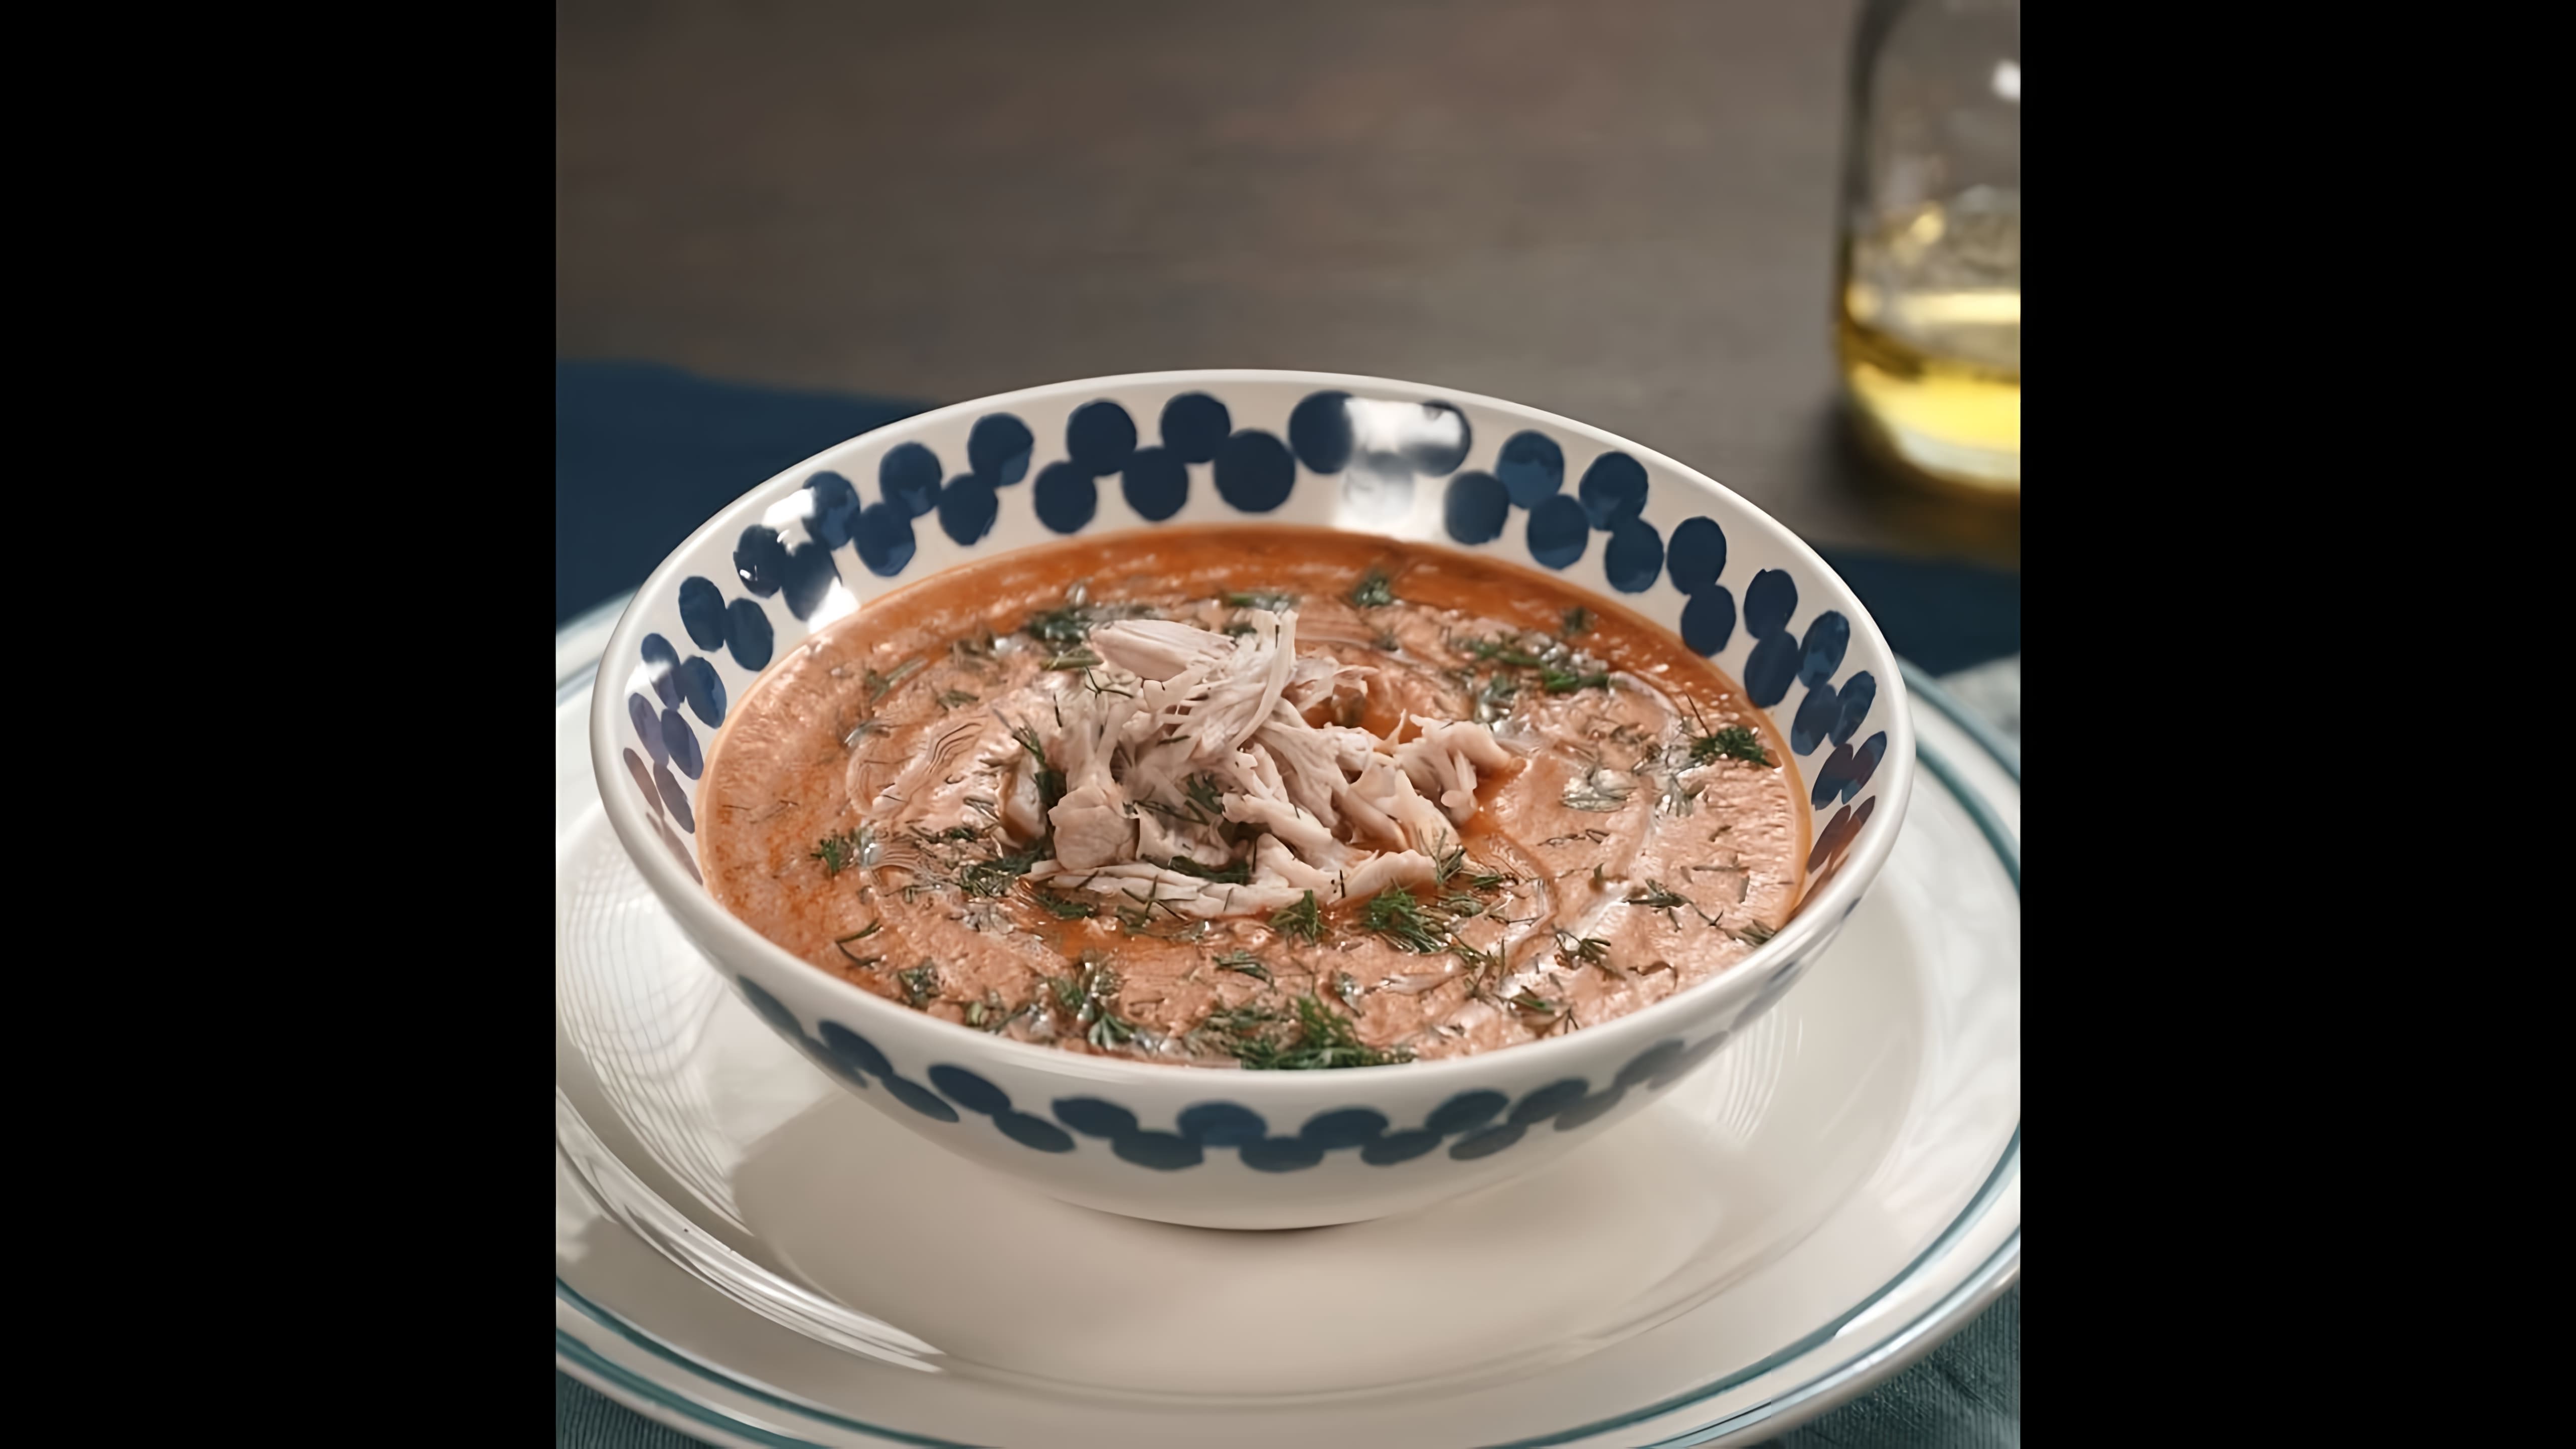 Суп-пюре из индейки - это вкусное и питательное блюдо, которое можно приготовить в домашних условиях